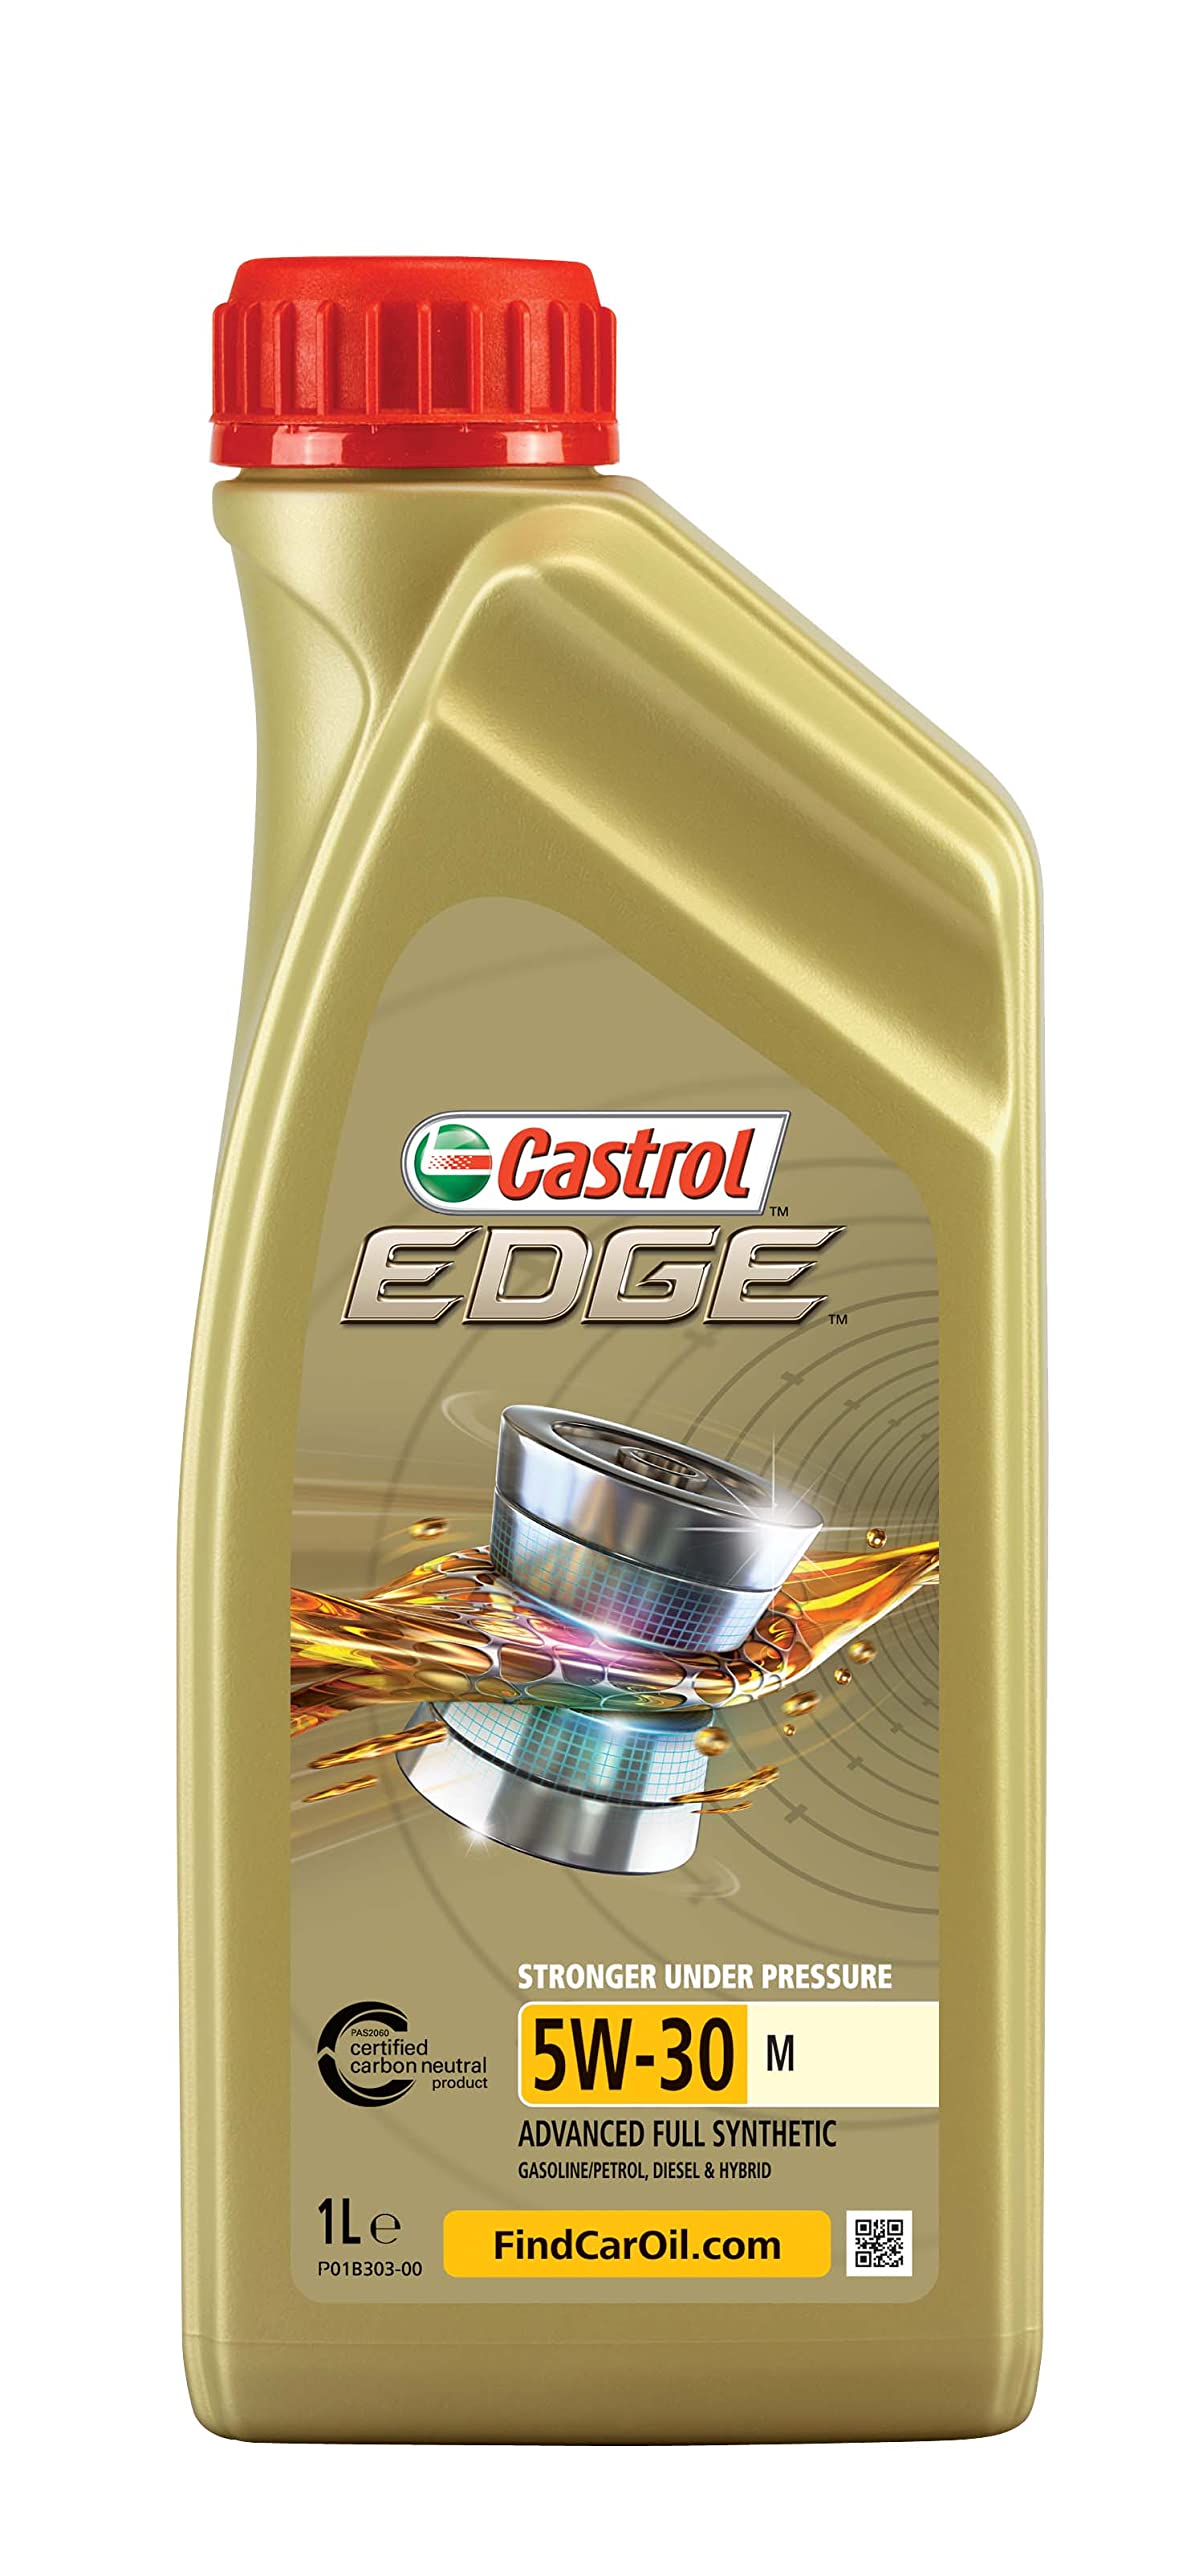 Castrol EDGE 5W-30 M, 1 Liter von Castrol